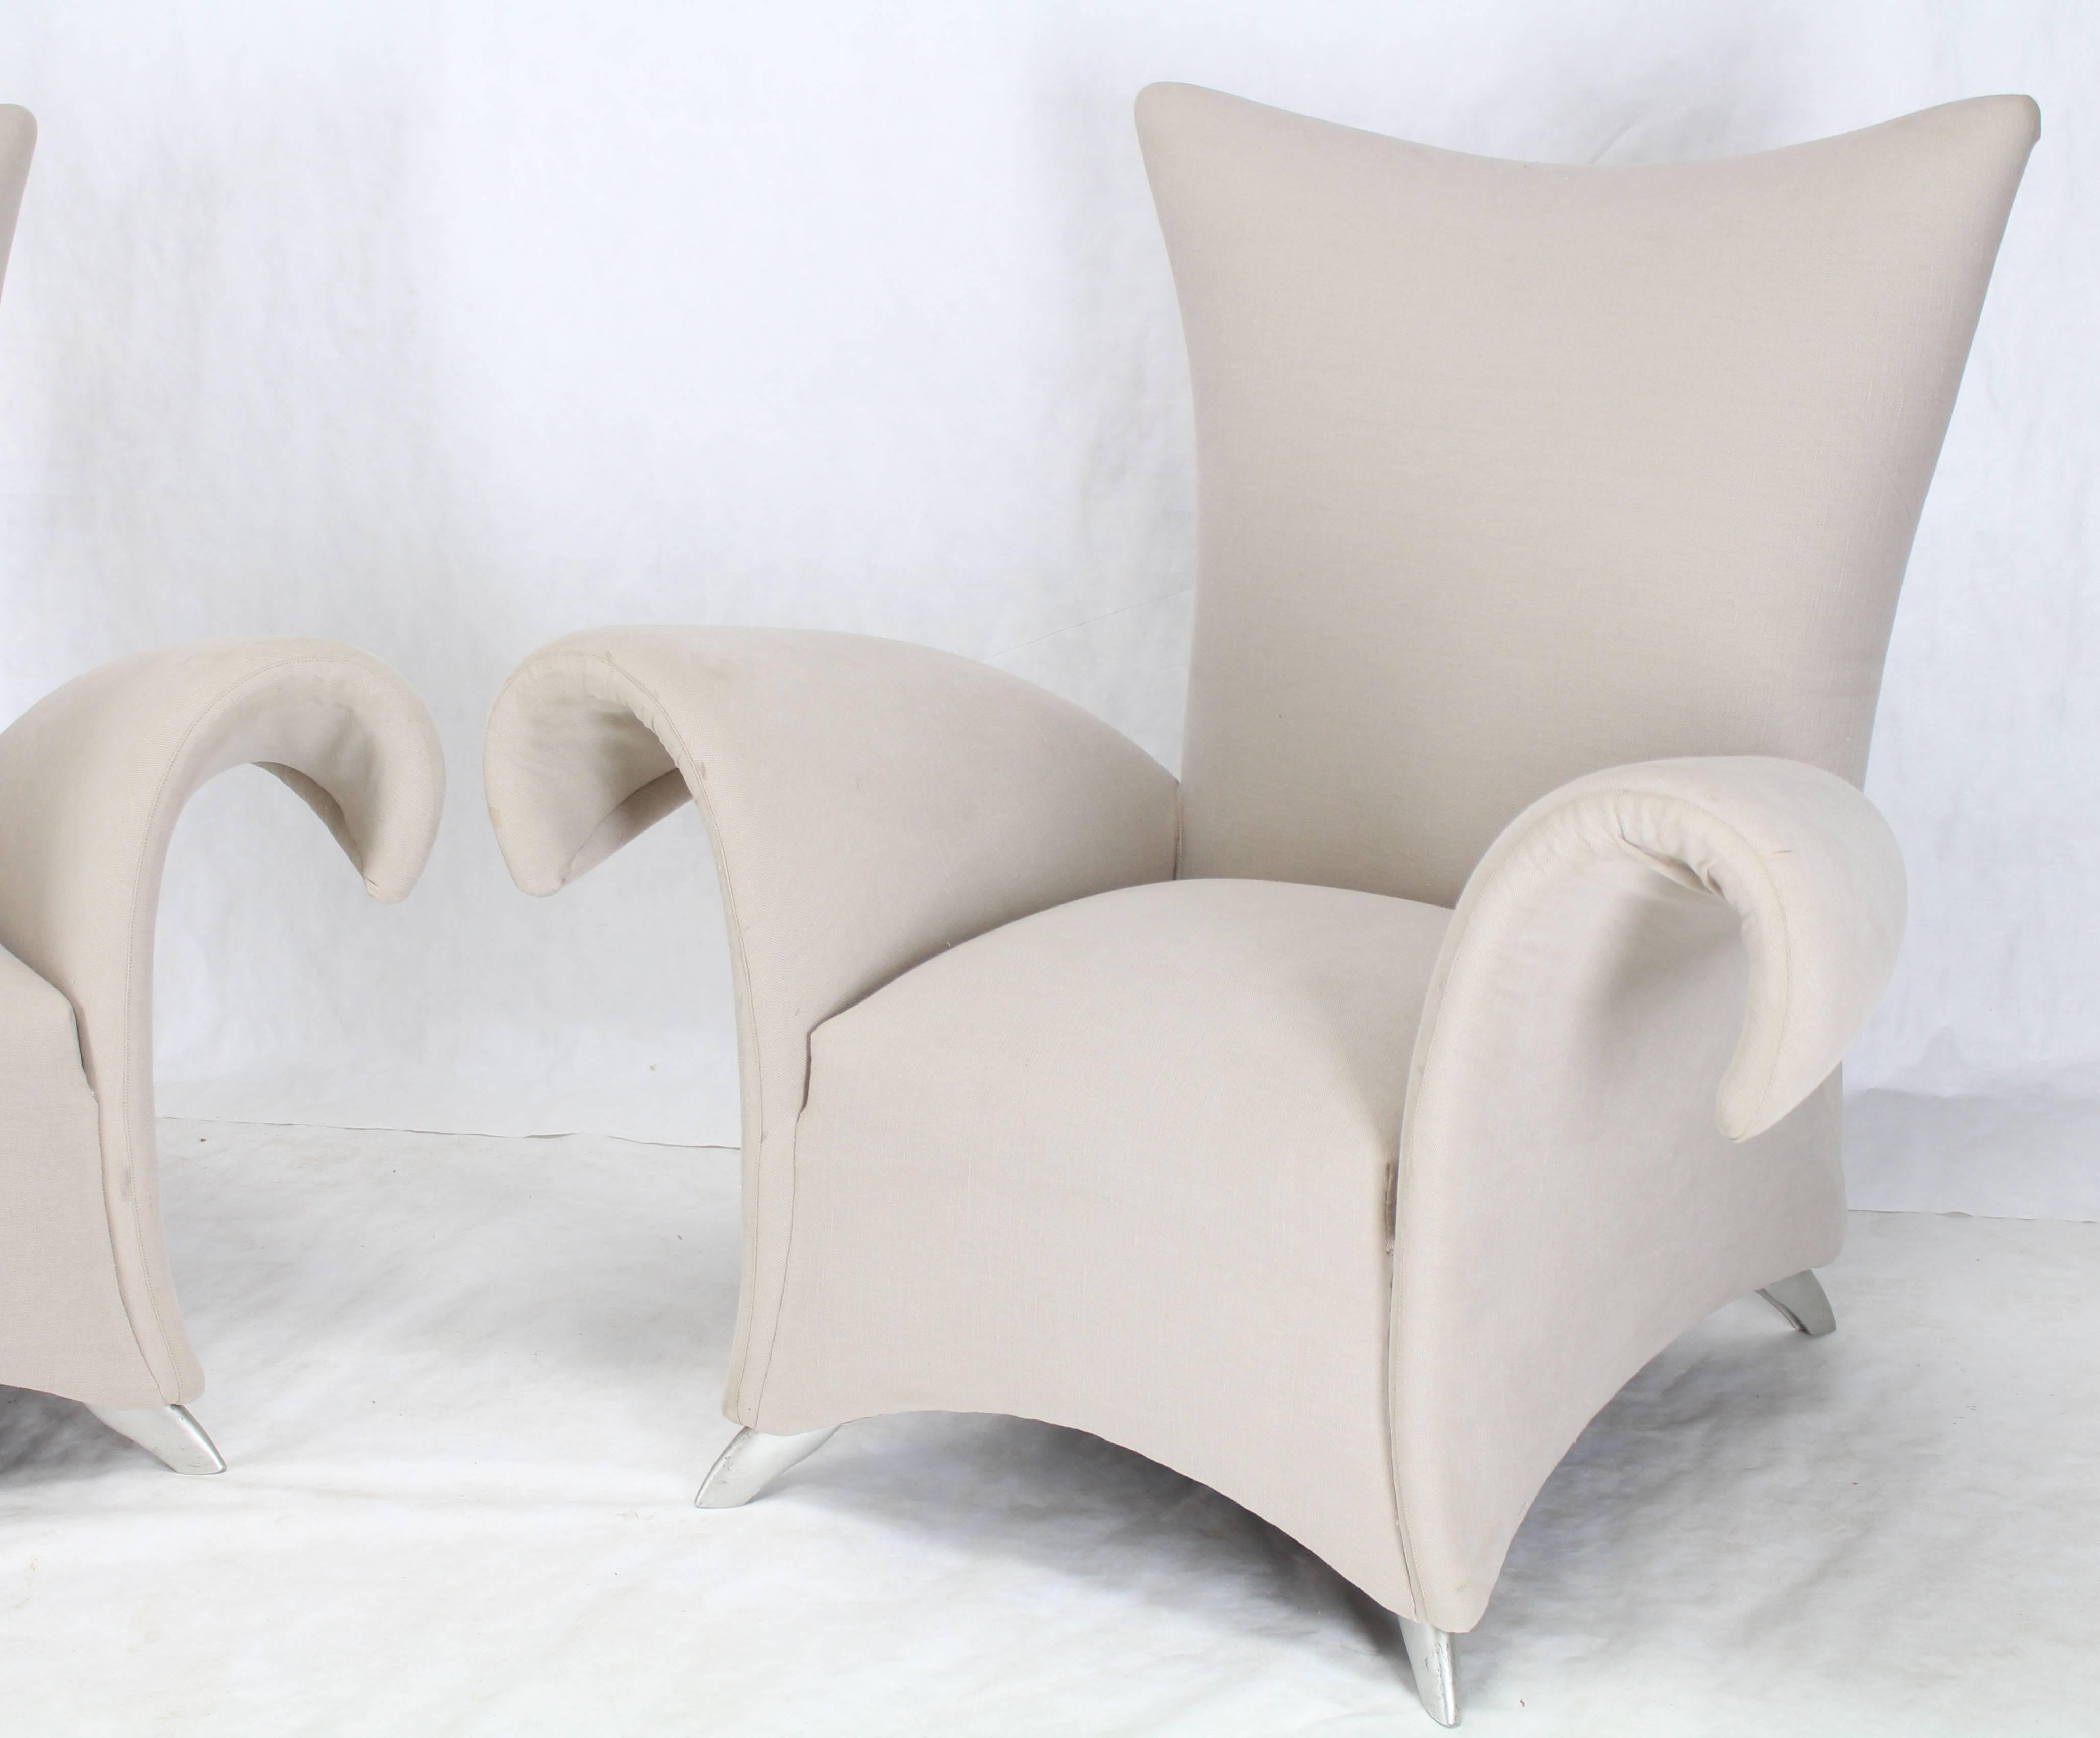 Superbe paire de chaises longues modernes du milieu du siècle. Garniture en bon état avec quelques légères marques d'usure.